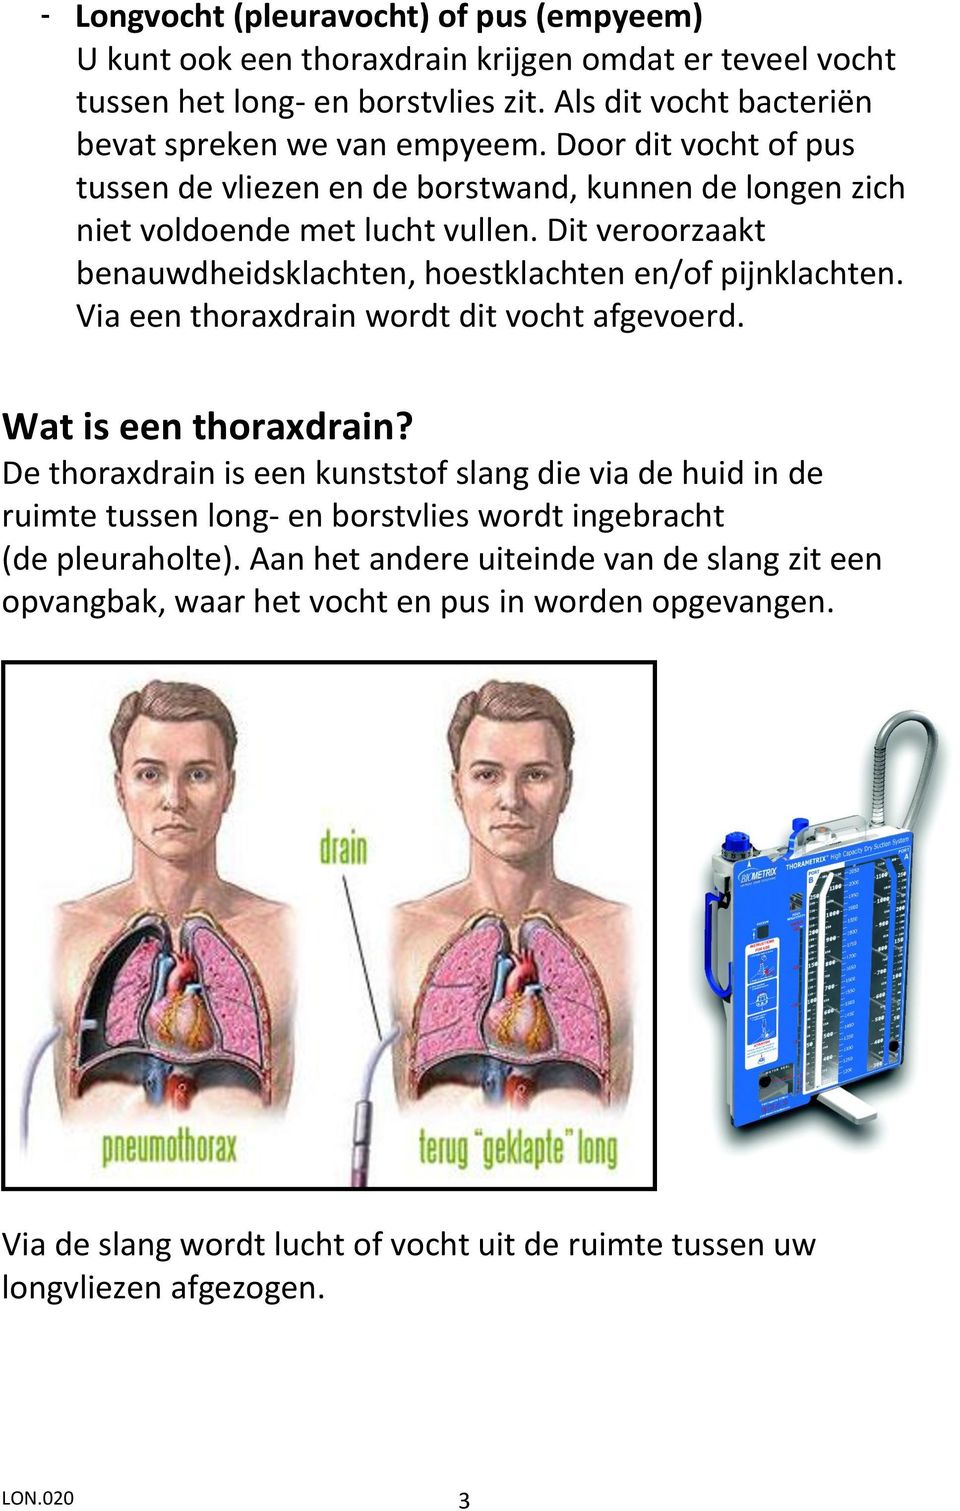 Via een thoraxdrain wordt dit vocht afgevoerd. Wat is een thoraxdrain?